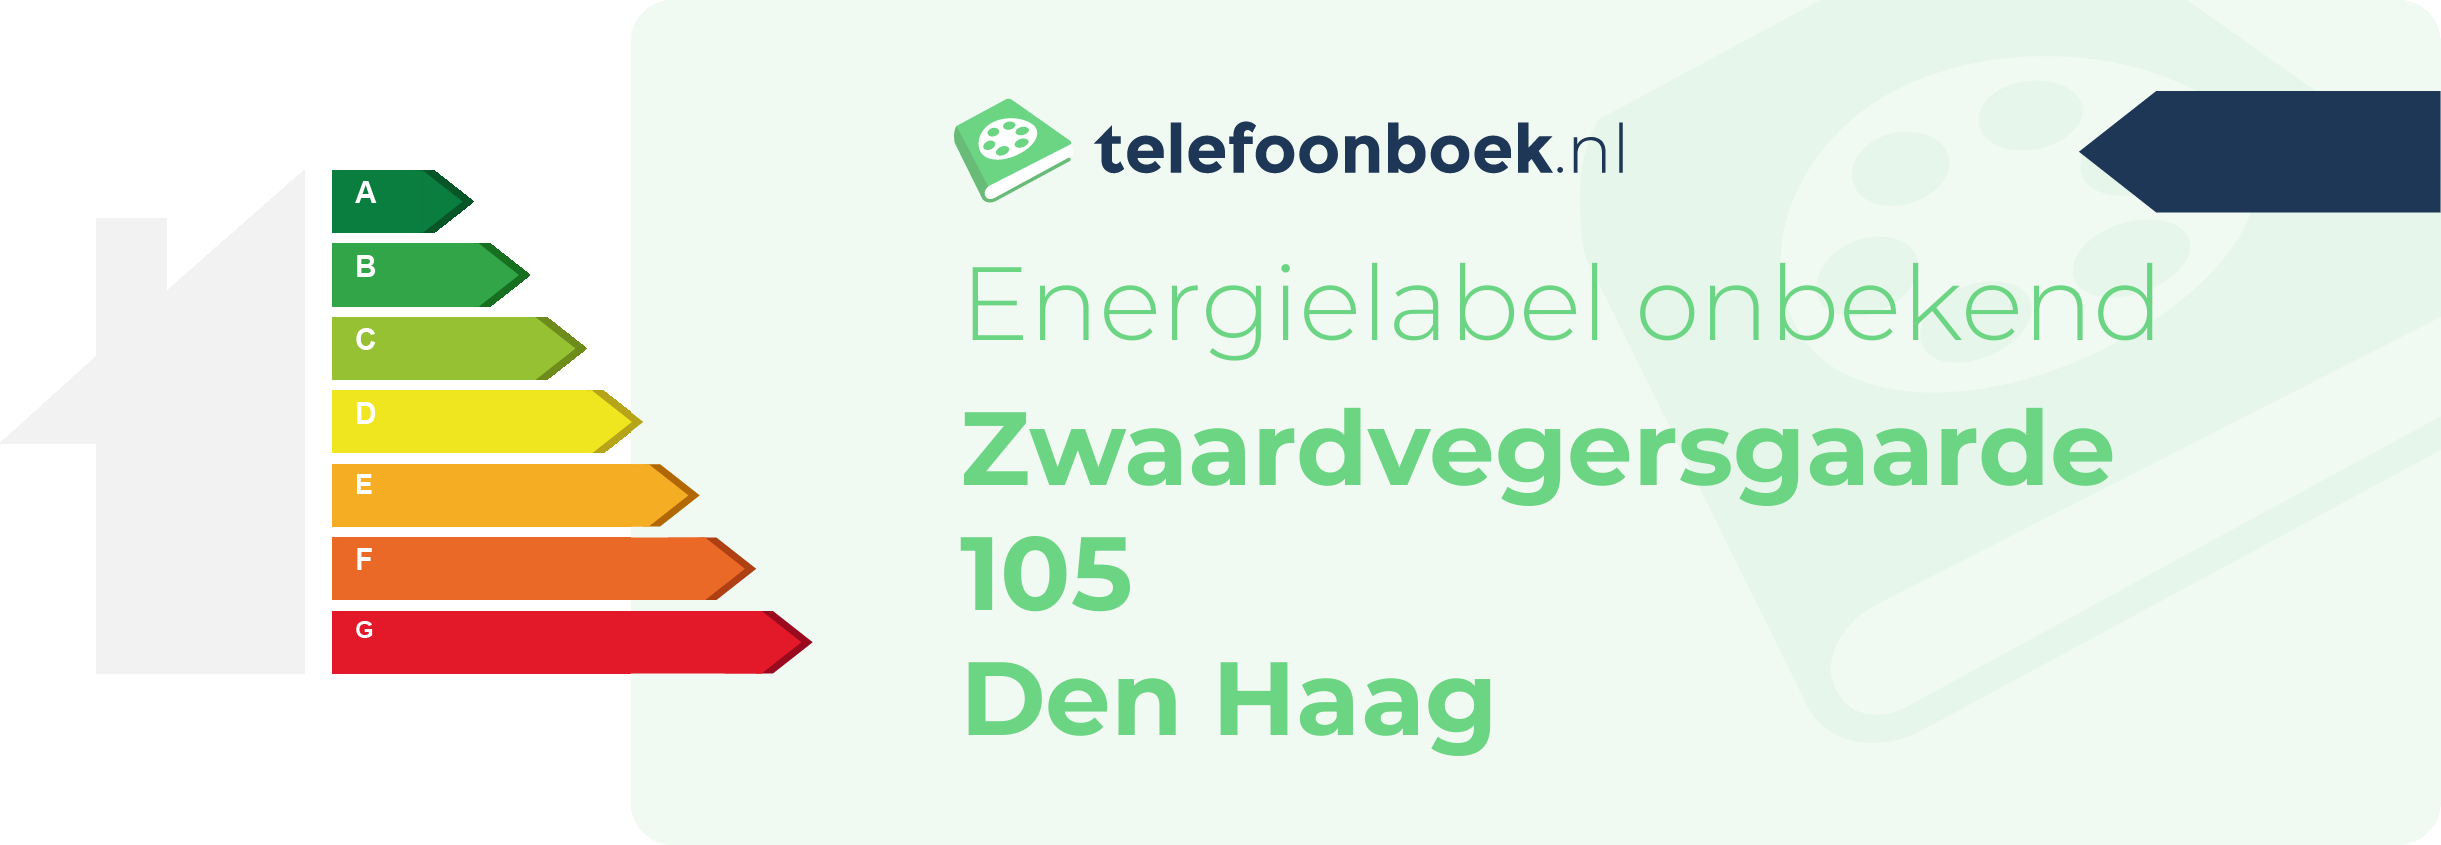 Energielabel Zwaardvegersgaarde 105 Den Haag